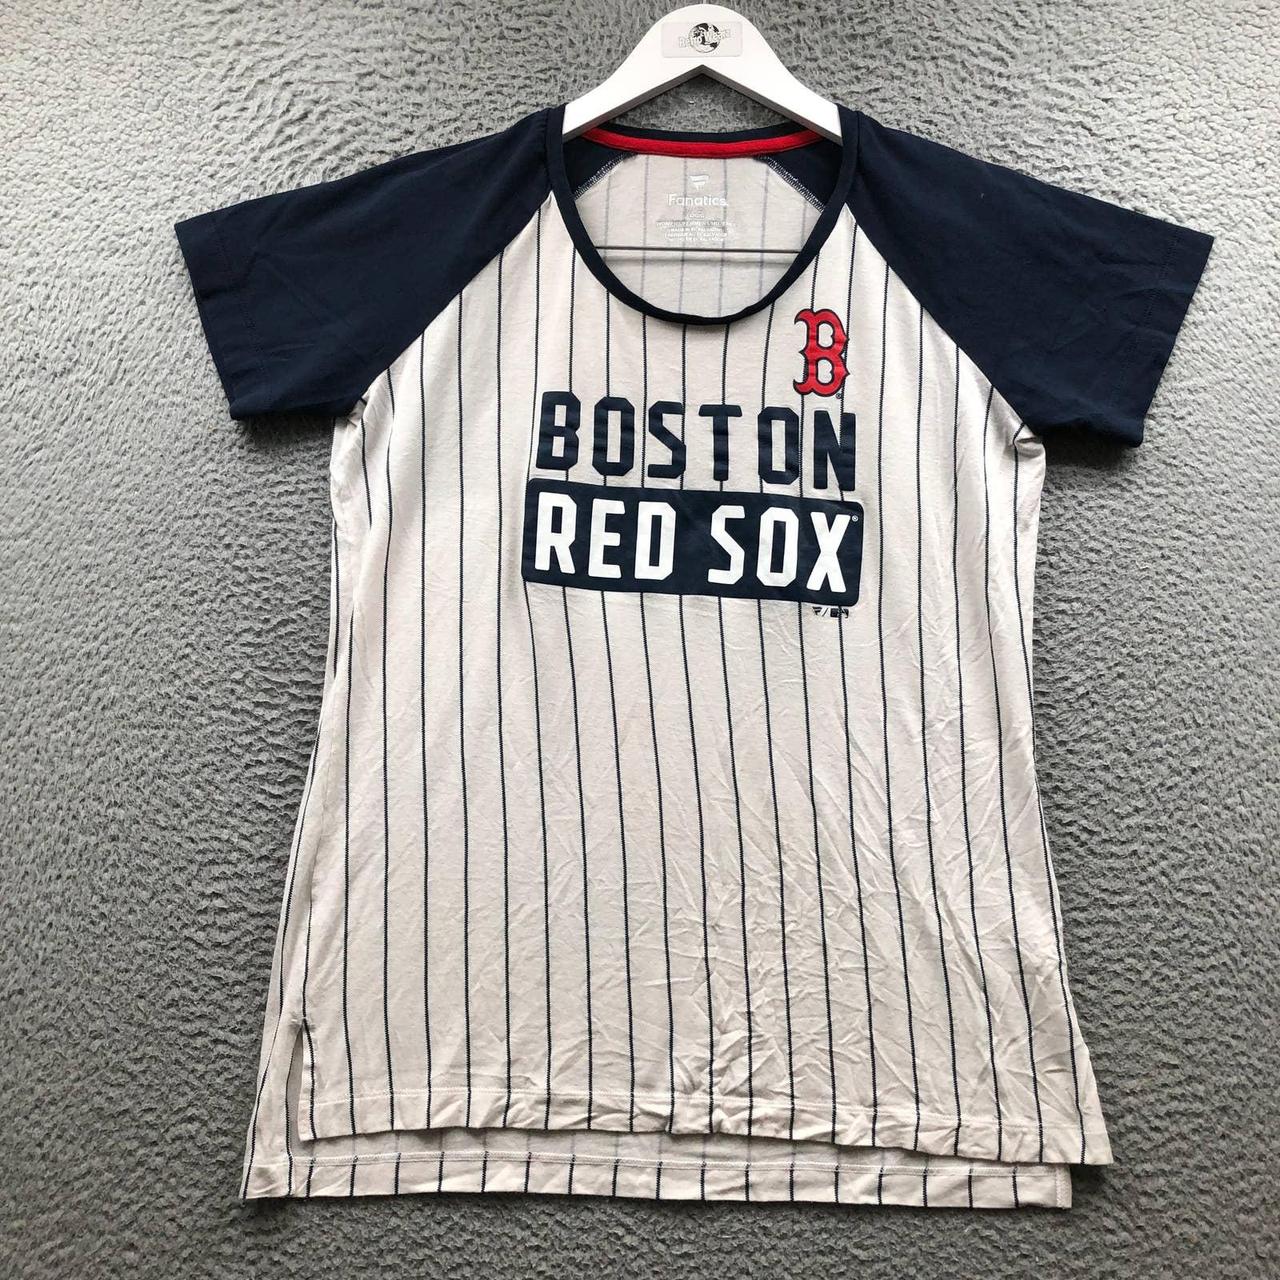 Women's Navy Boston Red Sox Plus Size Raglan T-Shirt